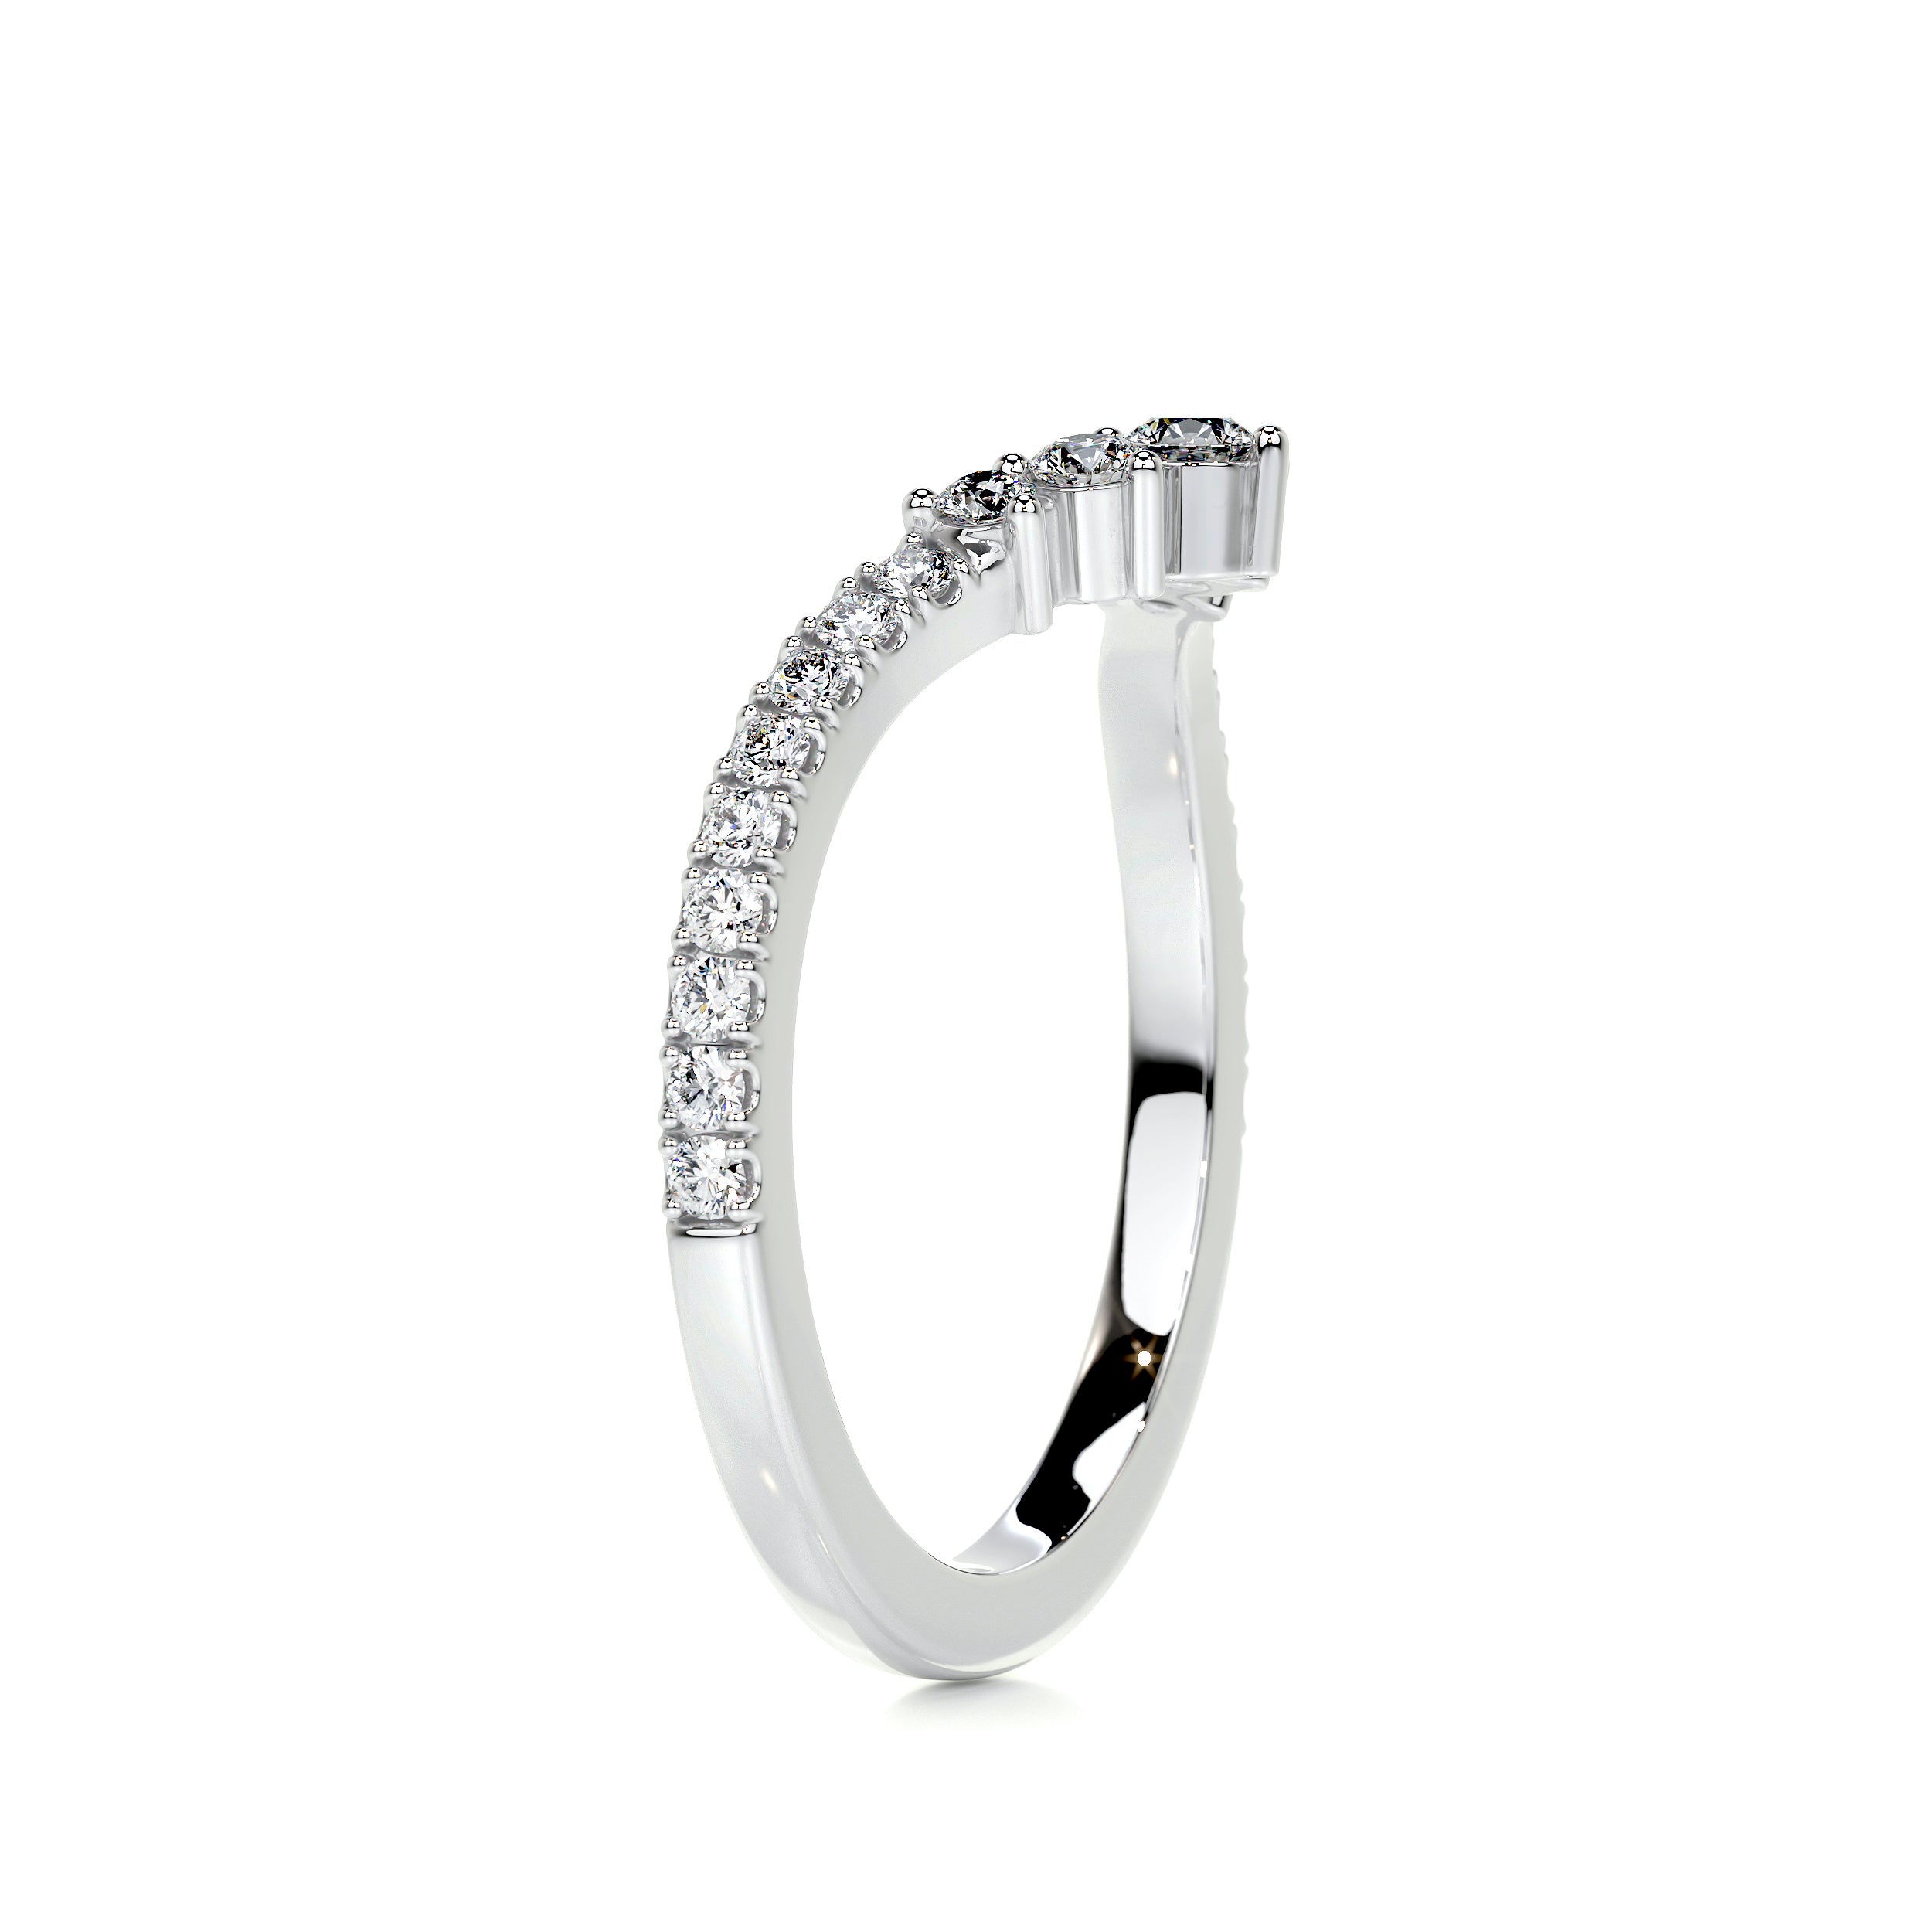 Mia Diamond Wedding Ring   (0.35 Carat) -14K White Gold